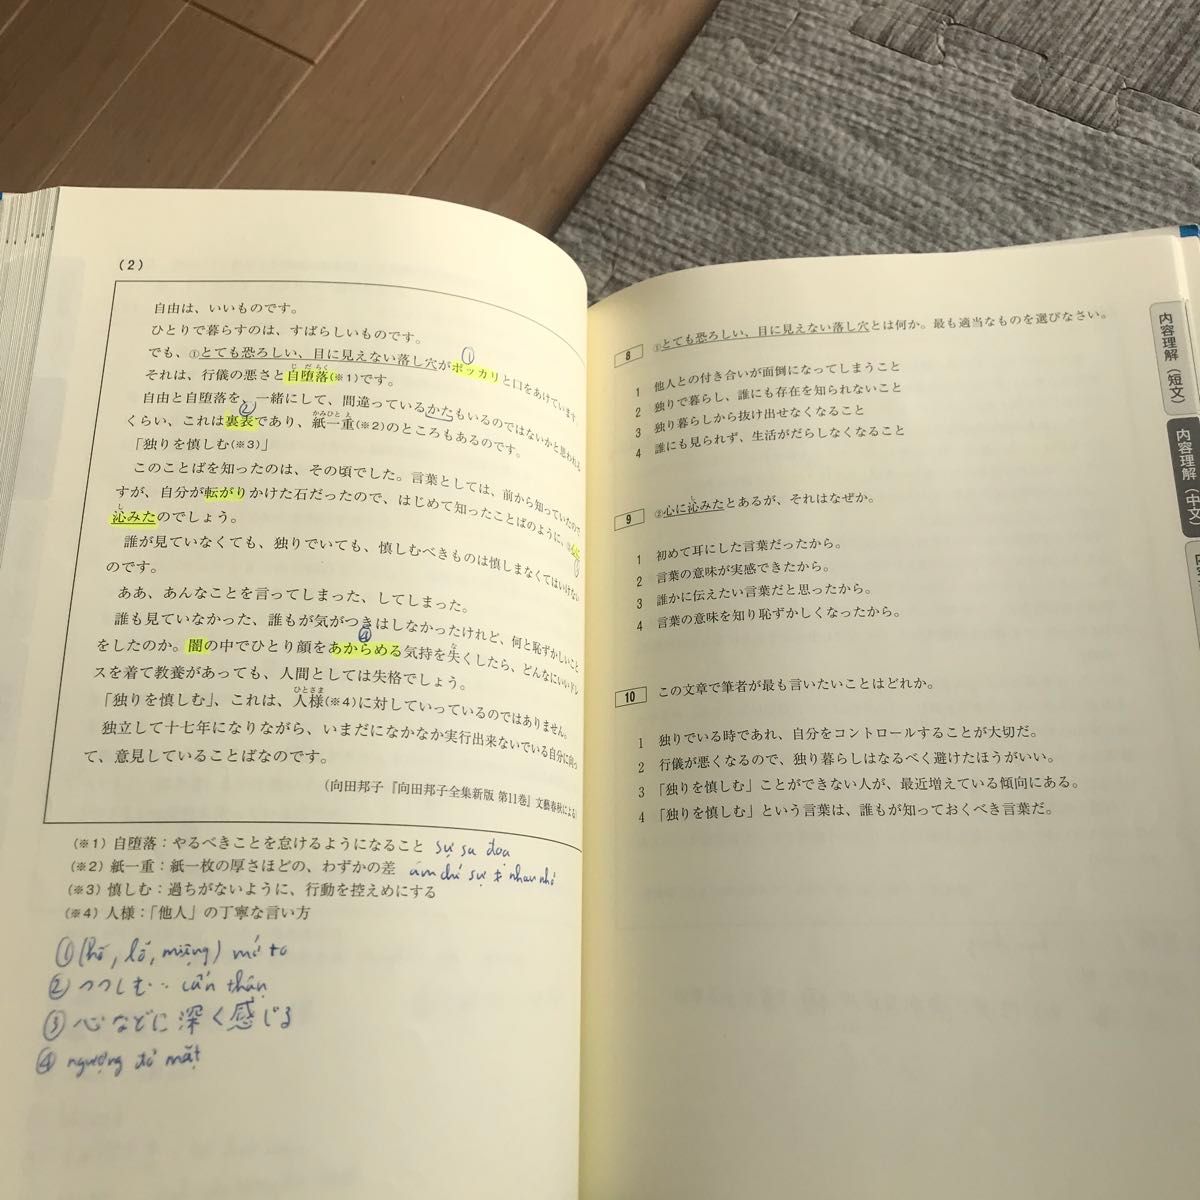 日本語能力試験問題集Ｎ１読解スピードマスター　Ｎ１合格！